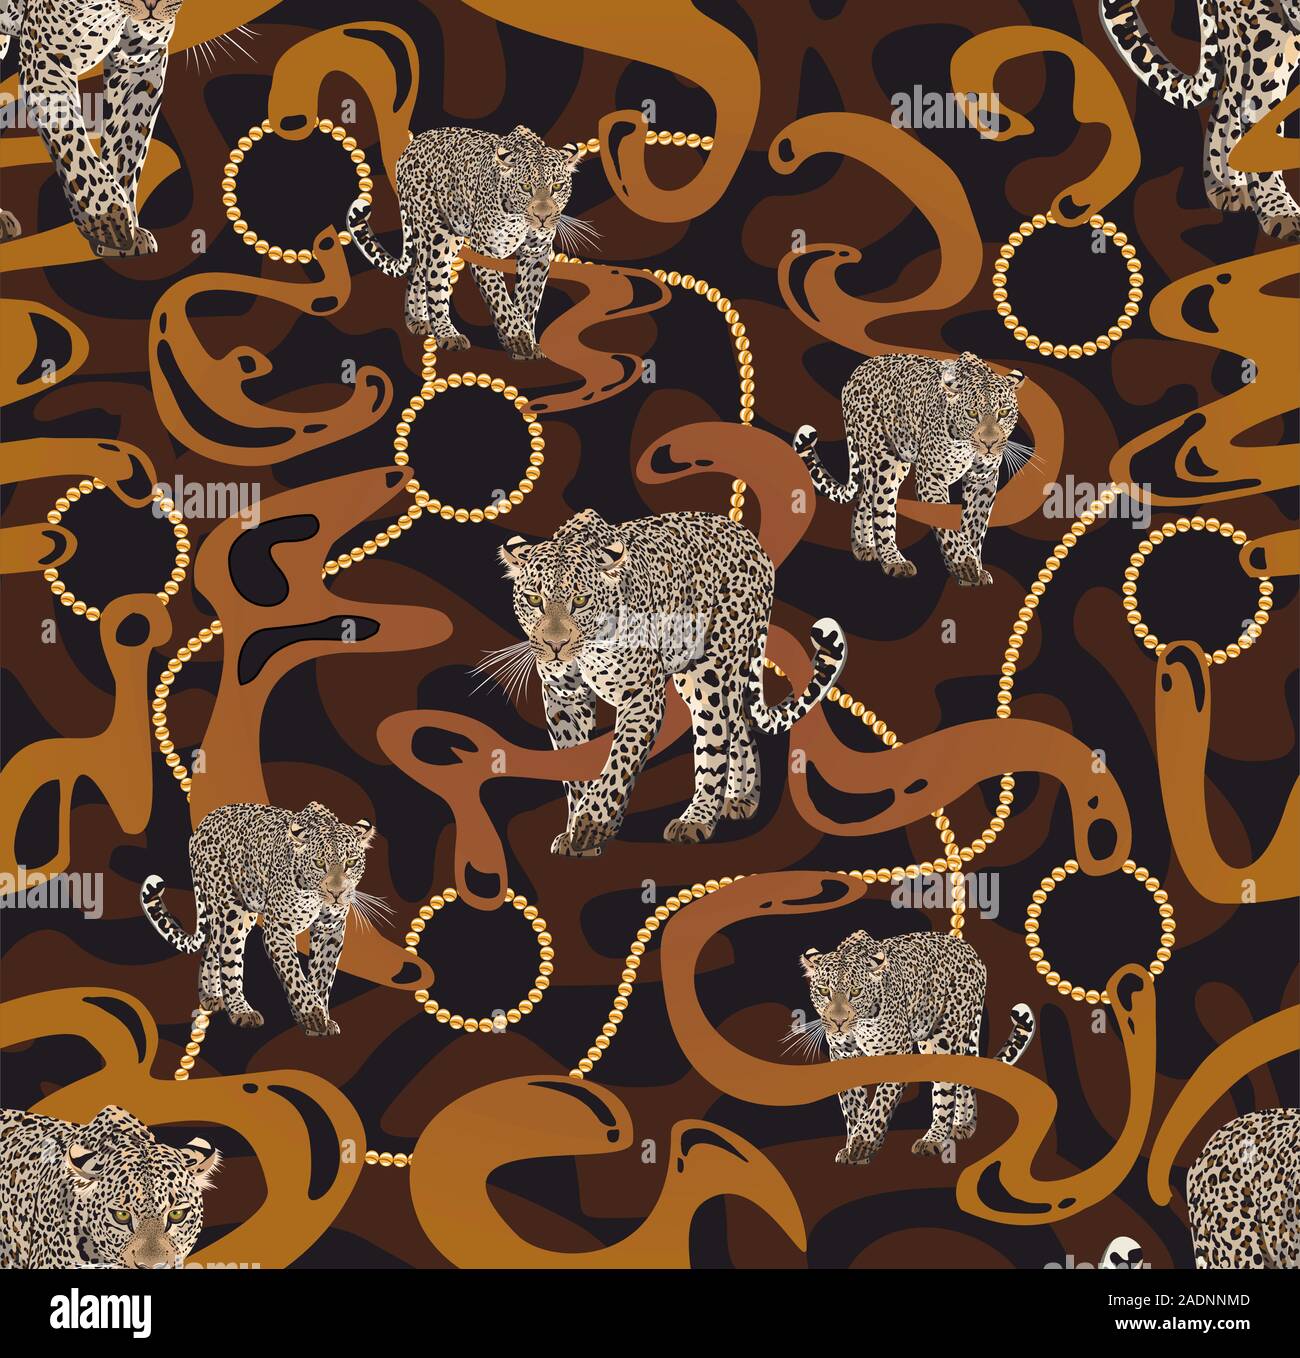 Leopard walking graphic design con accessori in oro. Catene d'oro.Fashion figure. - Vettore Illustrazione Vettoriale